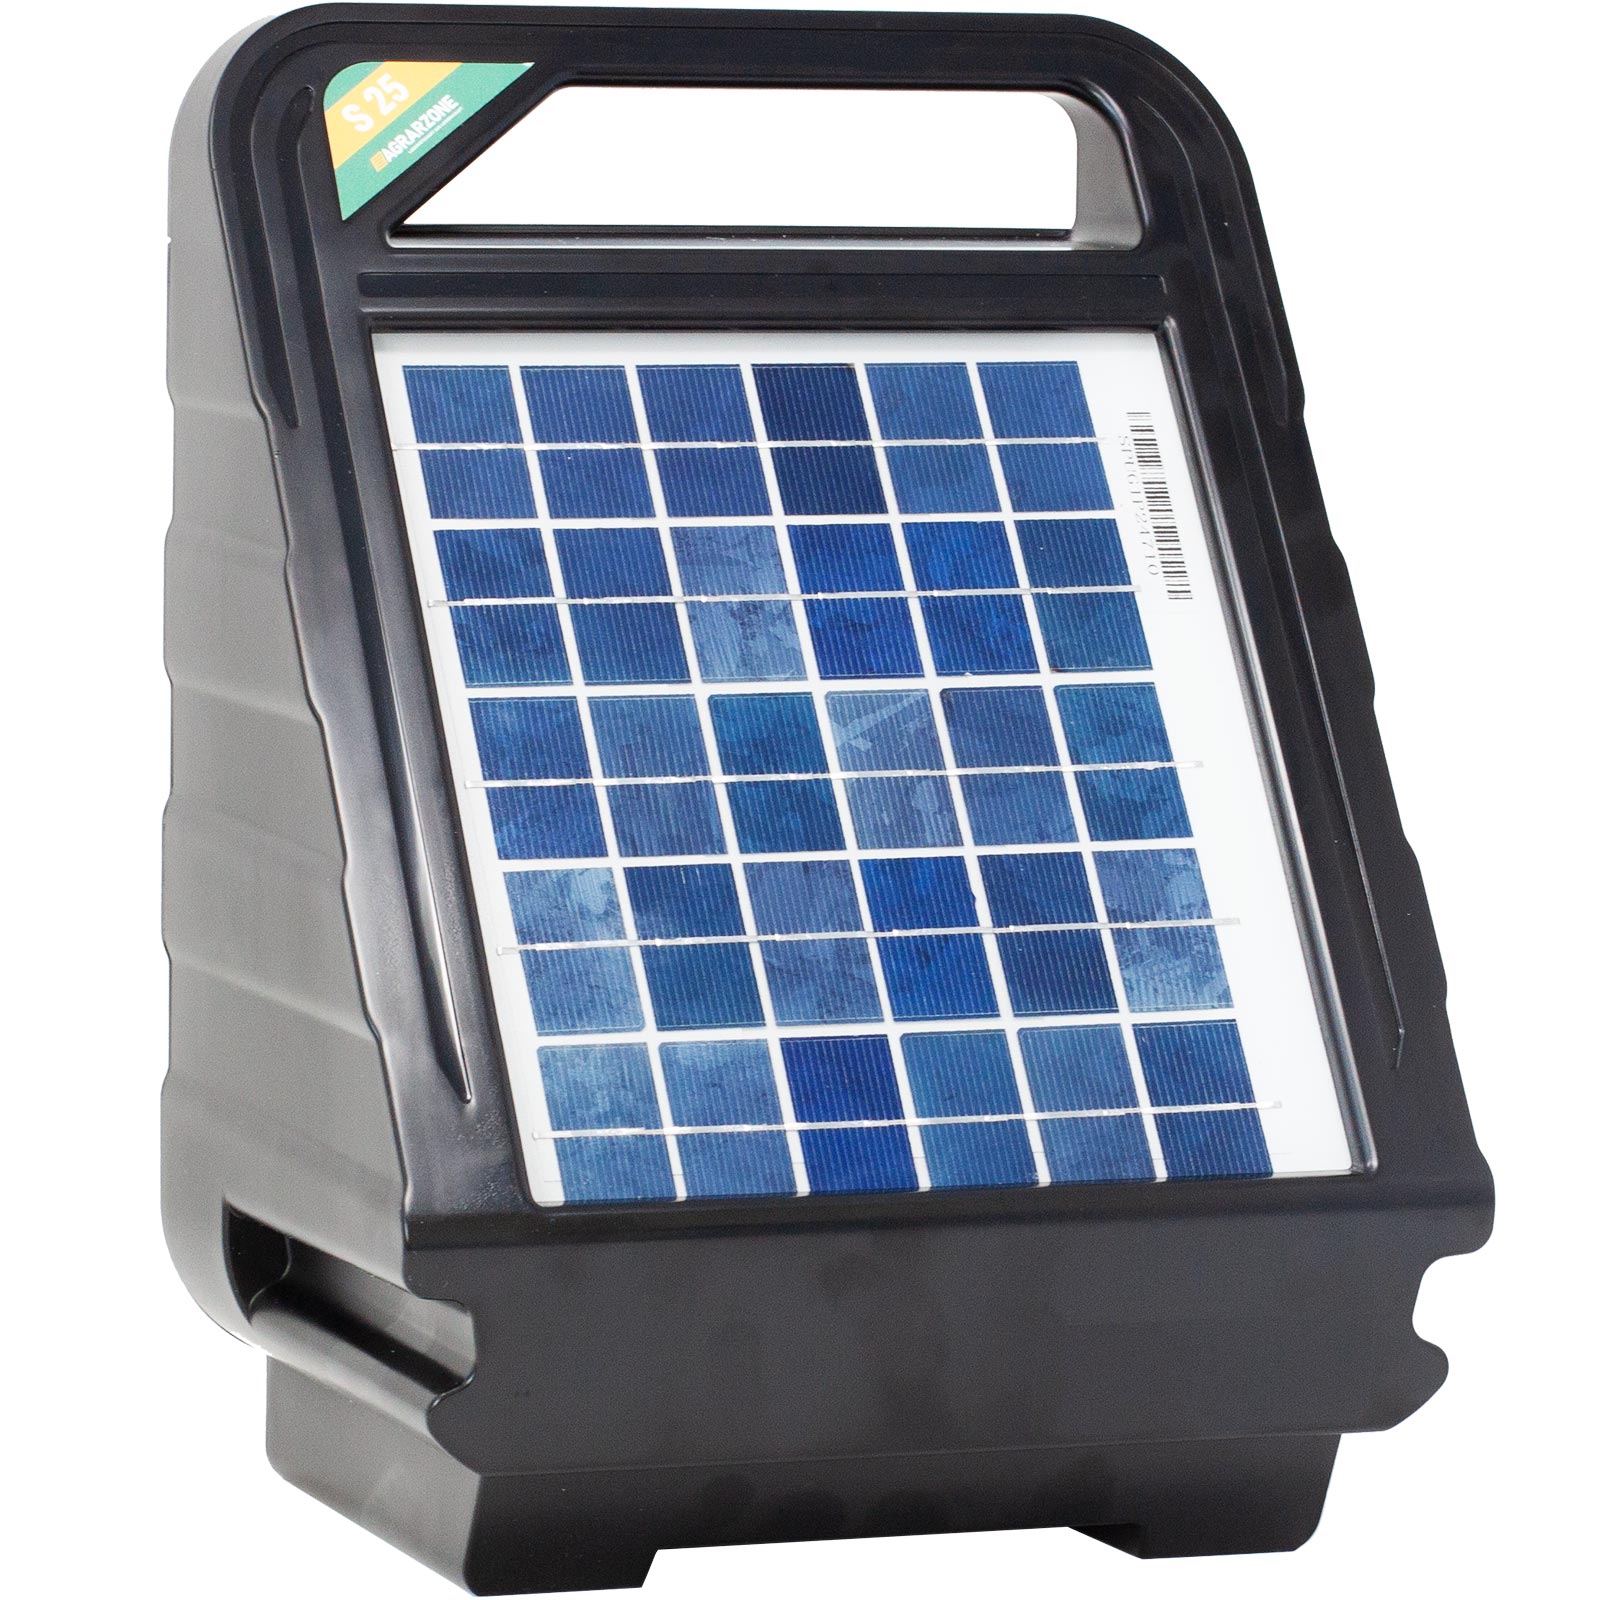 Agrarzone S 25 napelemes villanypásztor készülék 3 Watt, 0,40 Joule